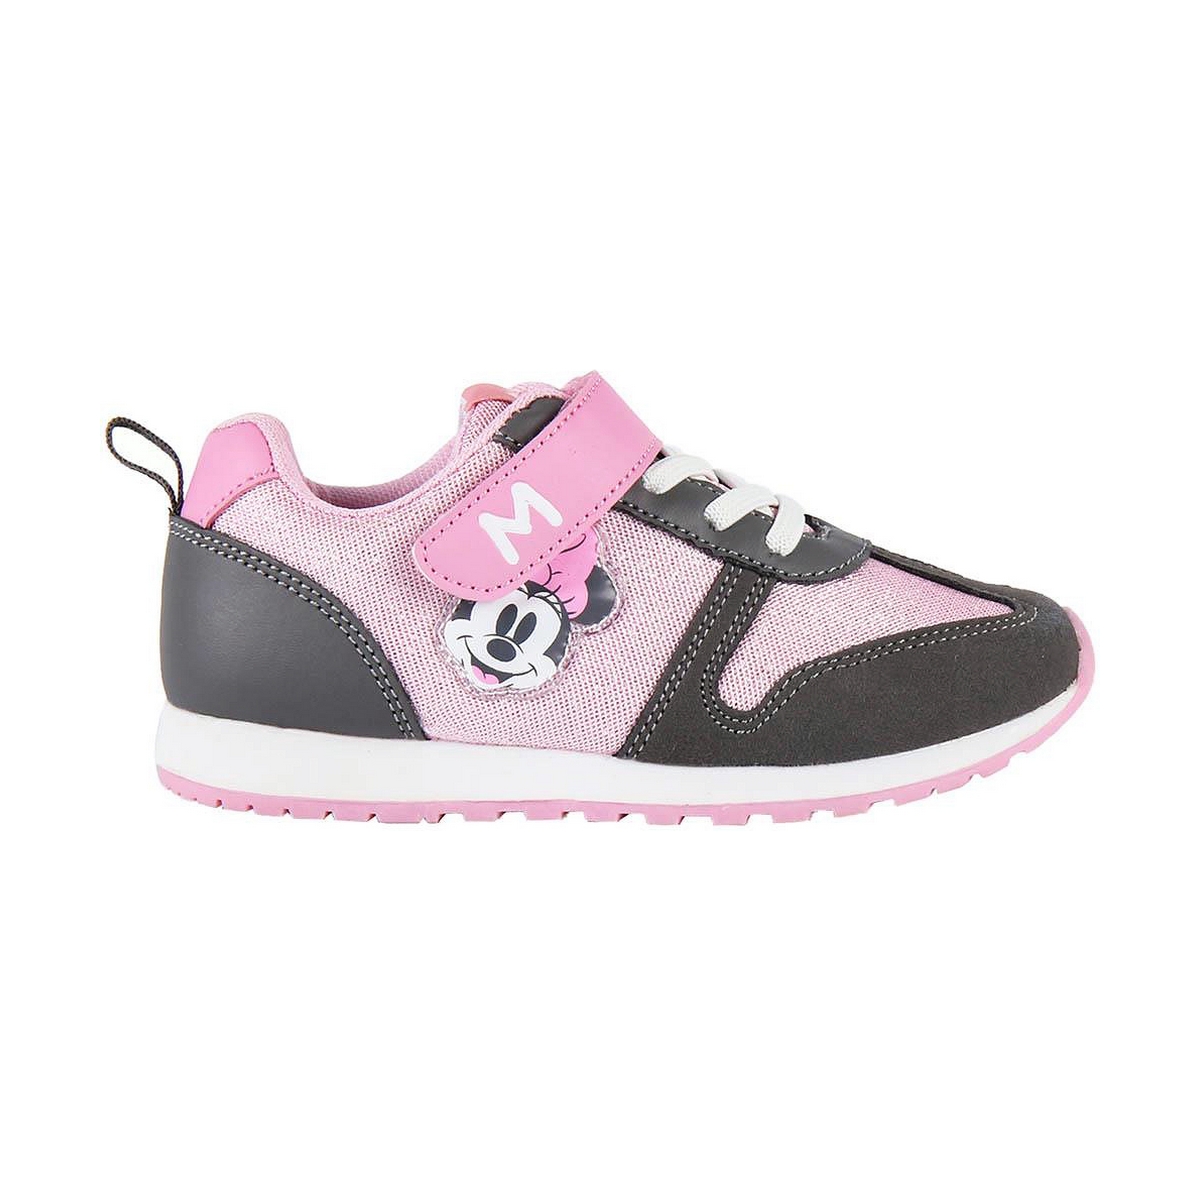 Chaussures de Sport pour Enfants Minnie Mouse Rose